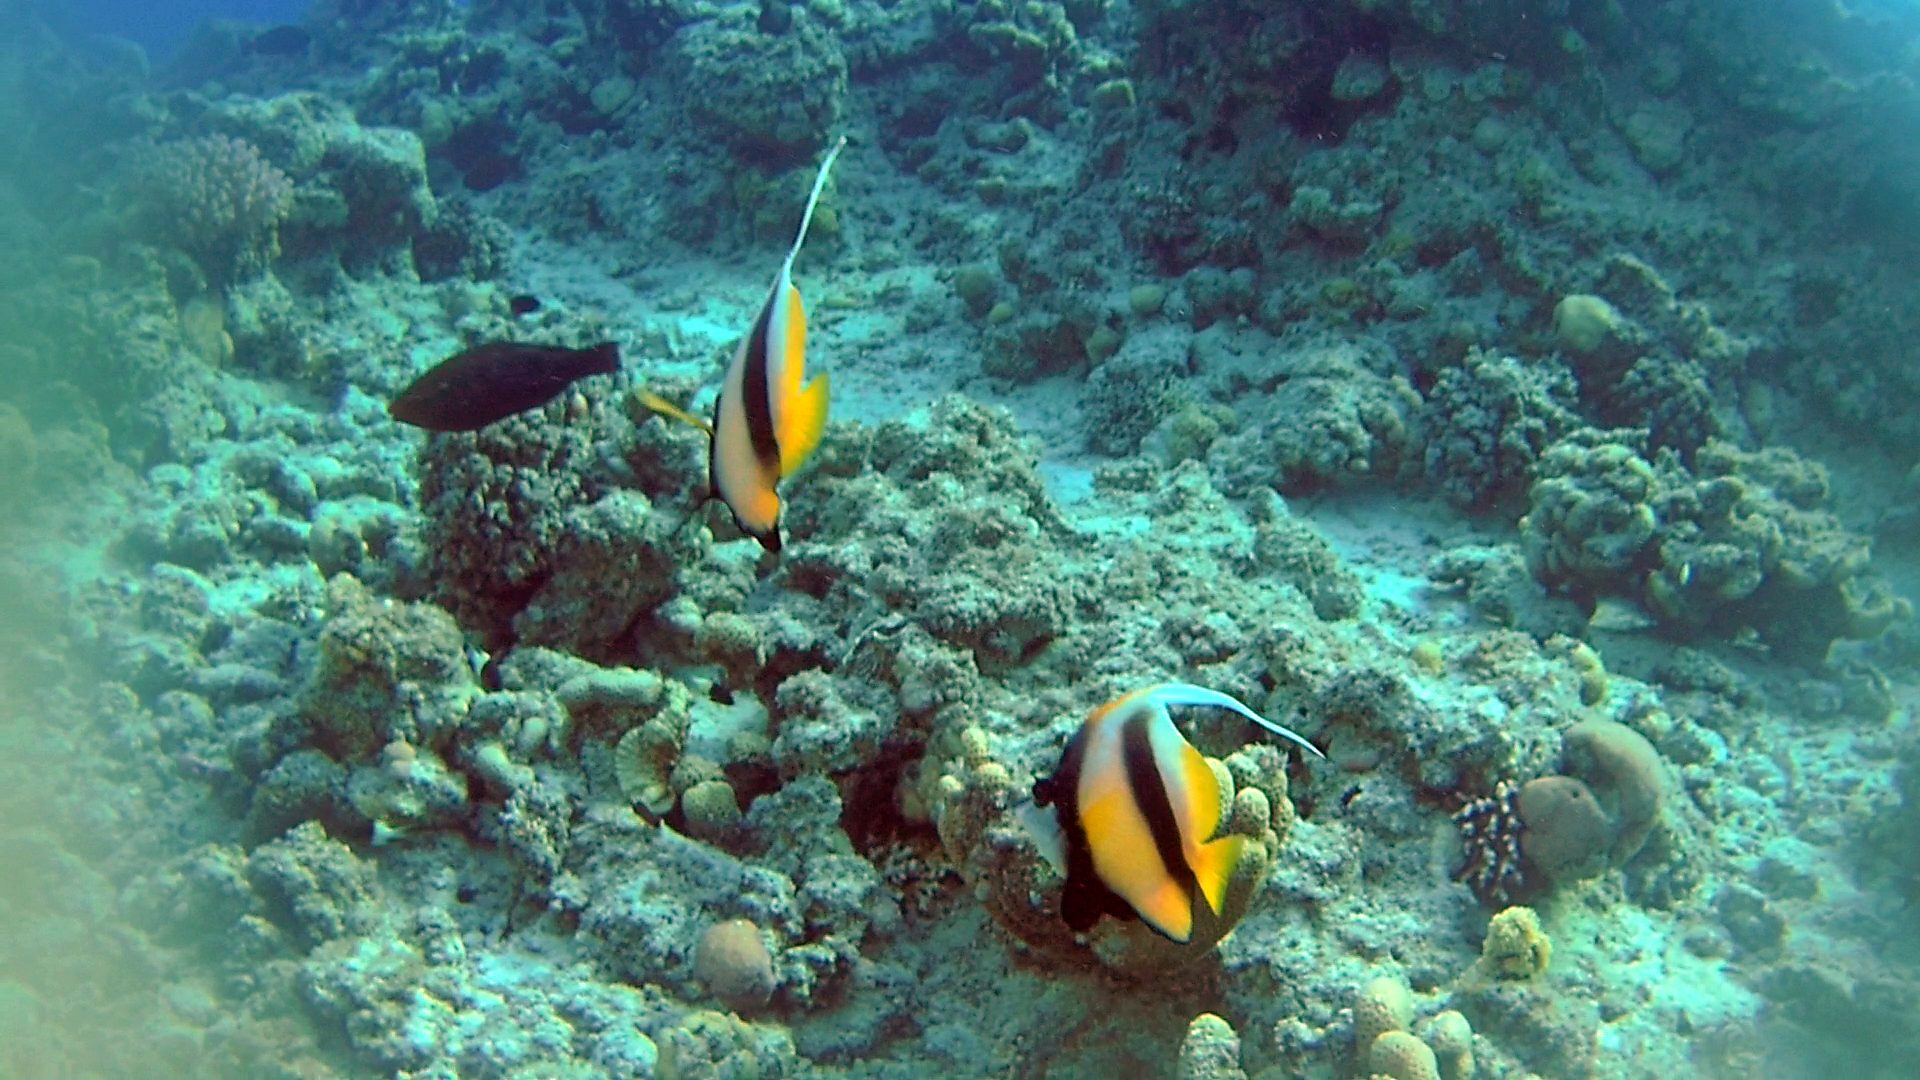 Il Pesce Farfalla Bandiera del Mar Rosso - The Red Sea Bannerfish - Heniochus intermedius - intotheblue.it